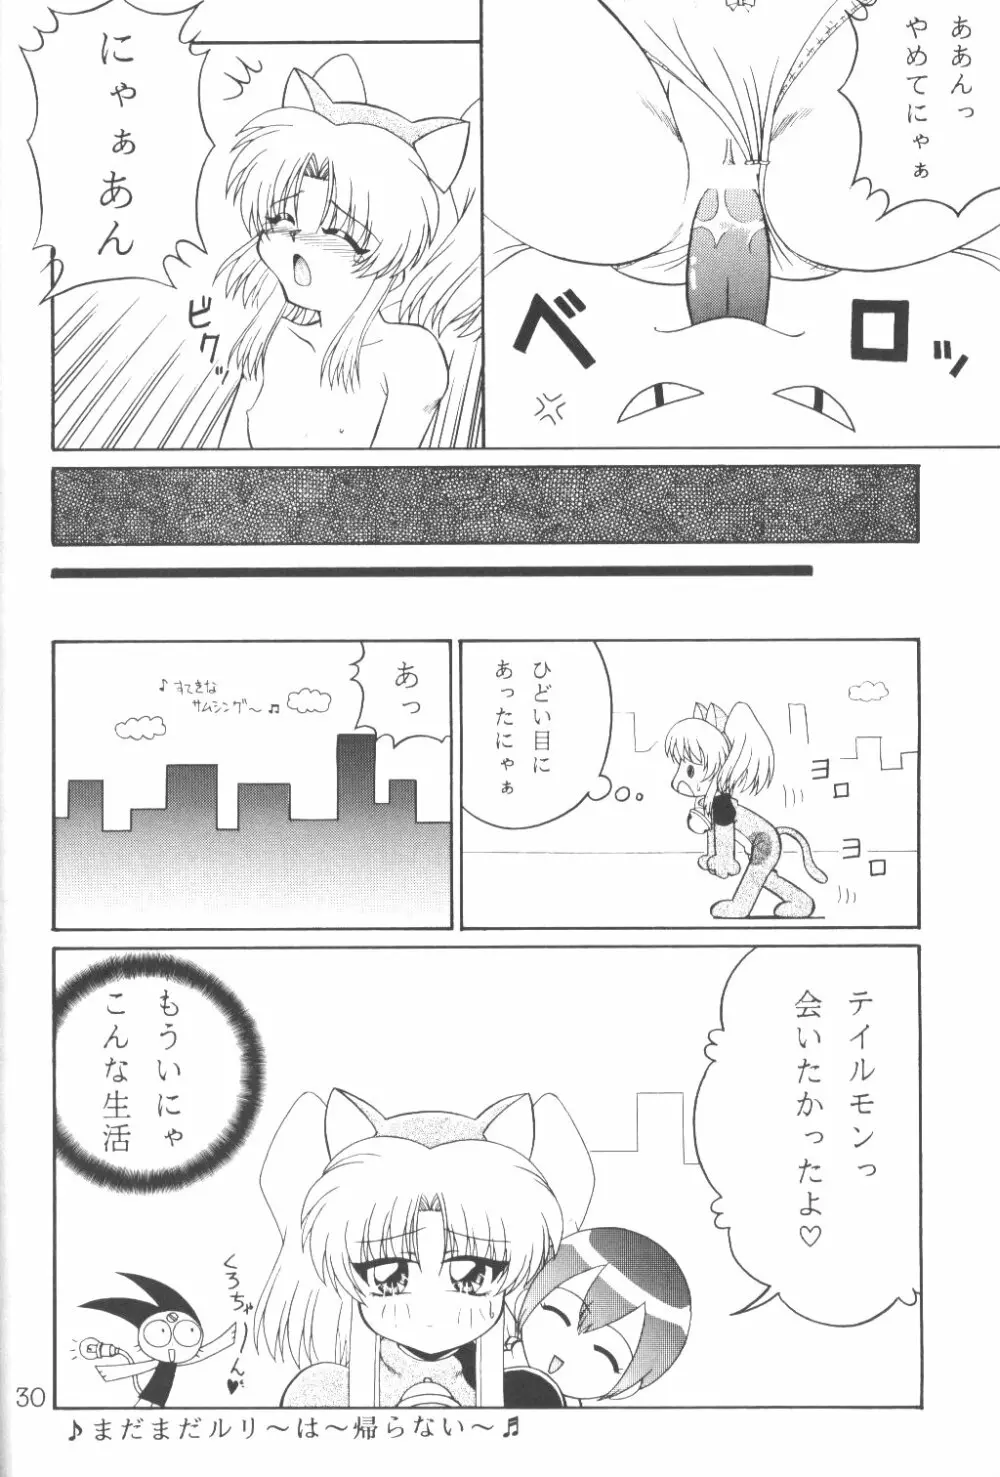 TOKUTEI 8 29ページ